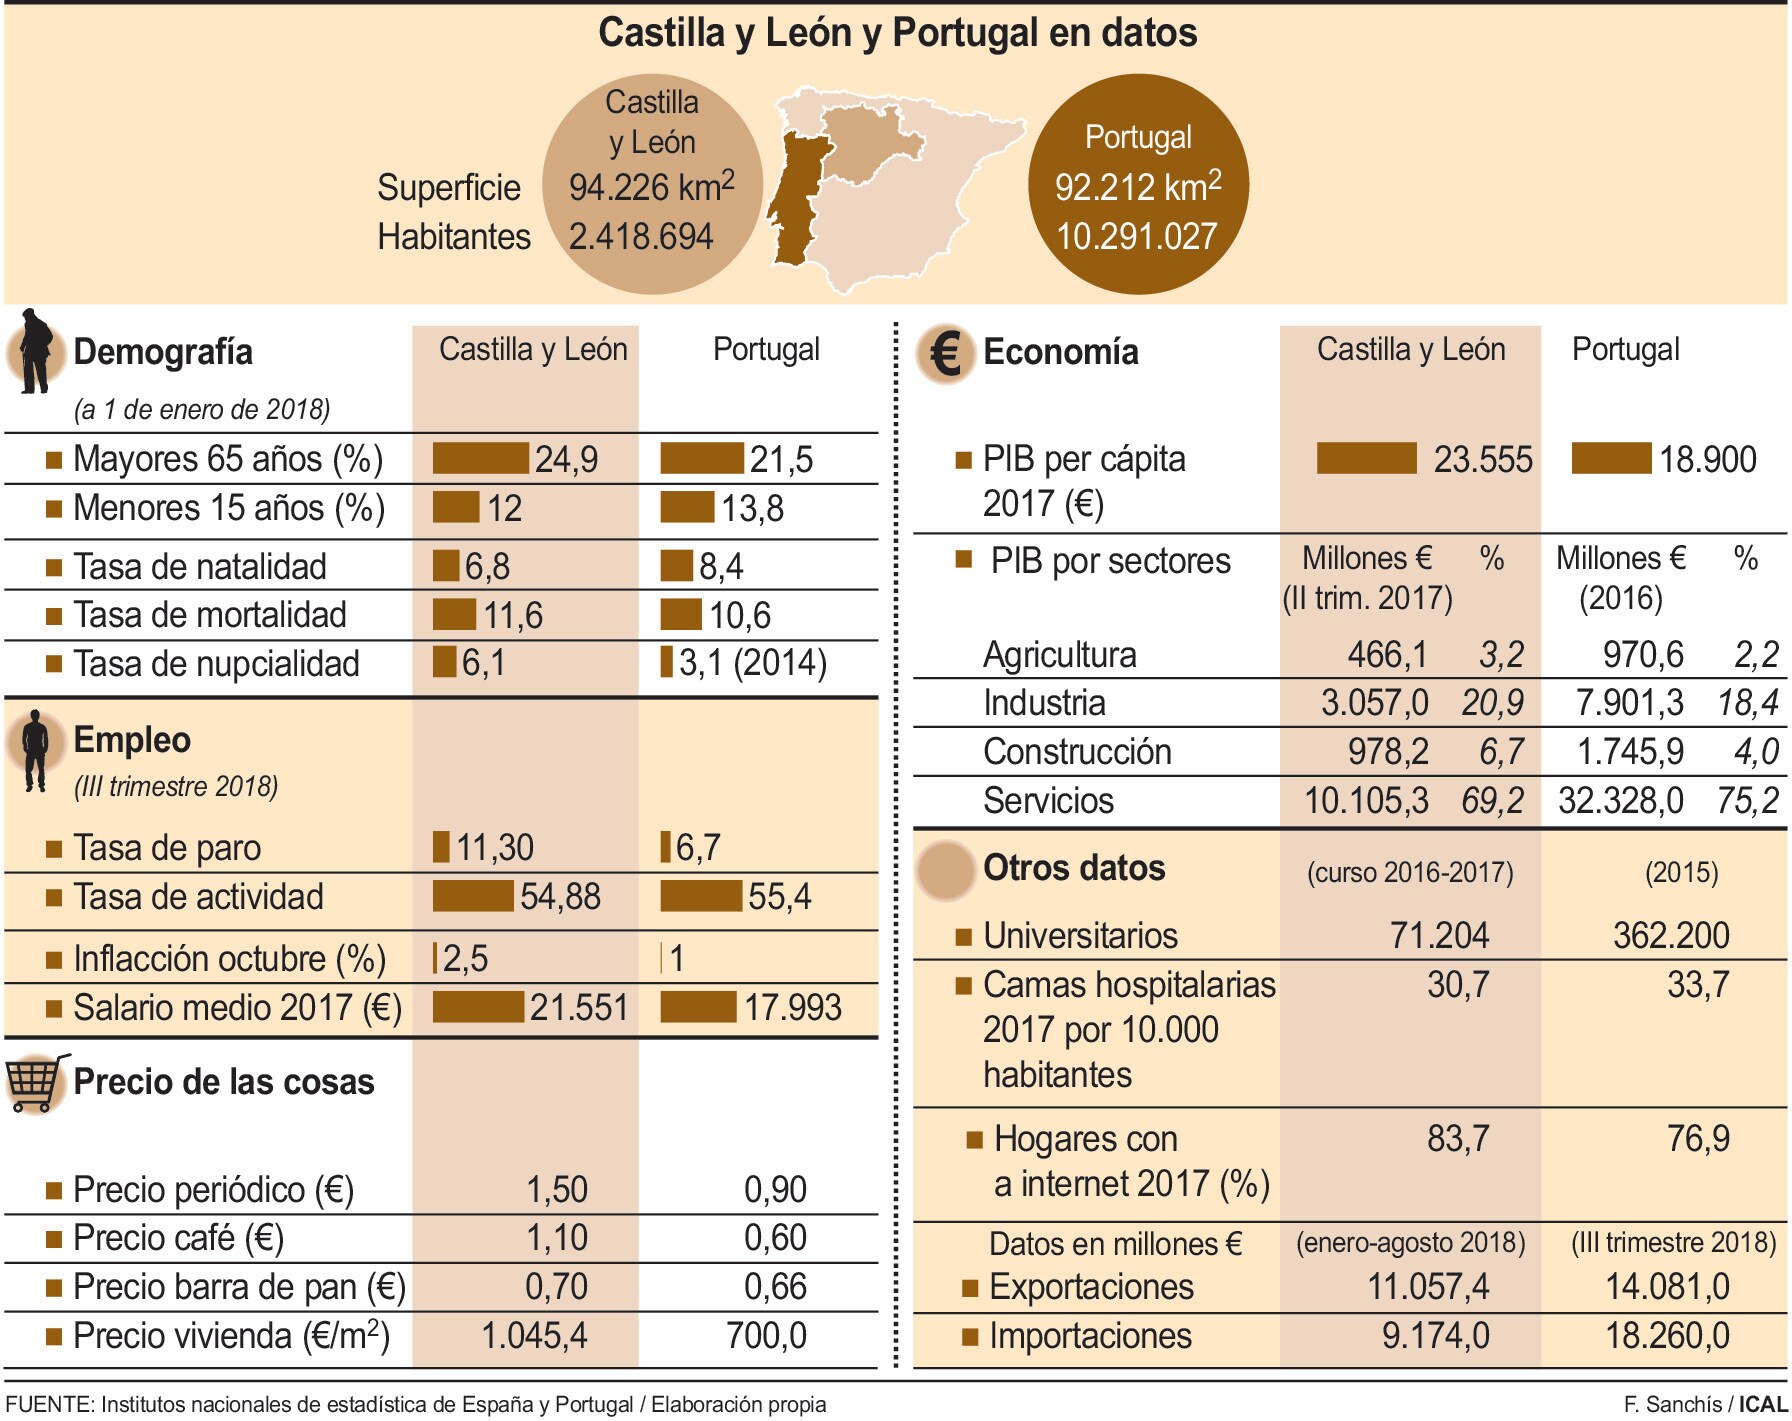 Castilla y León y Portugal en datos